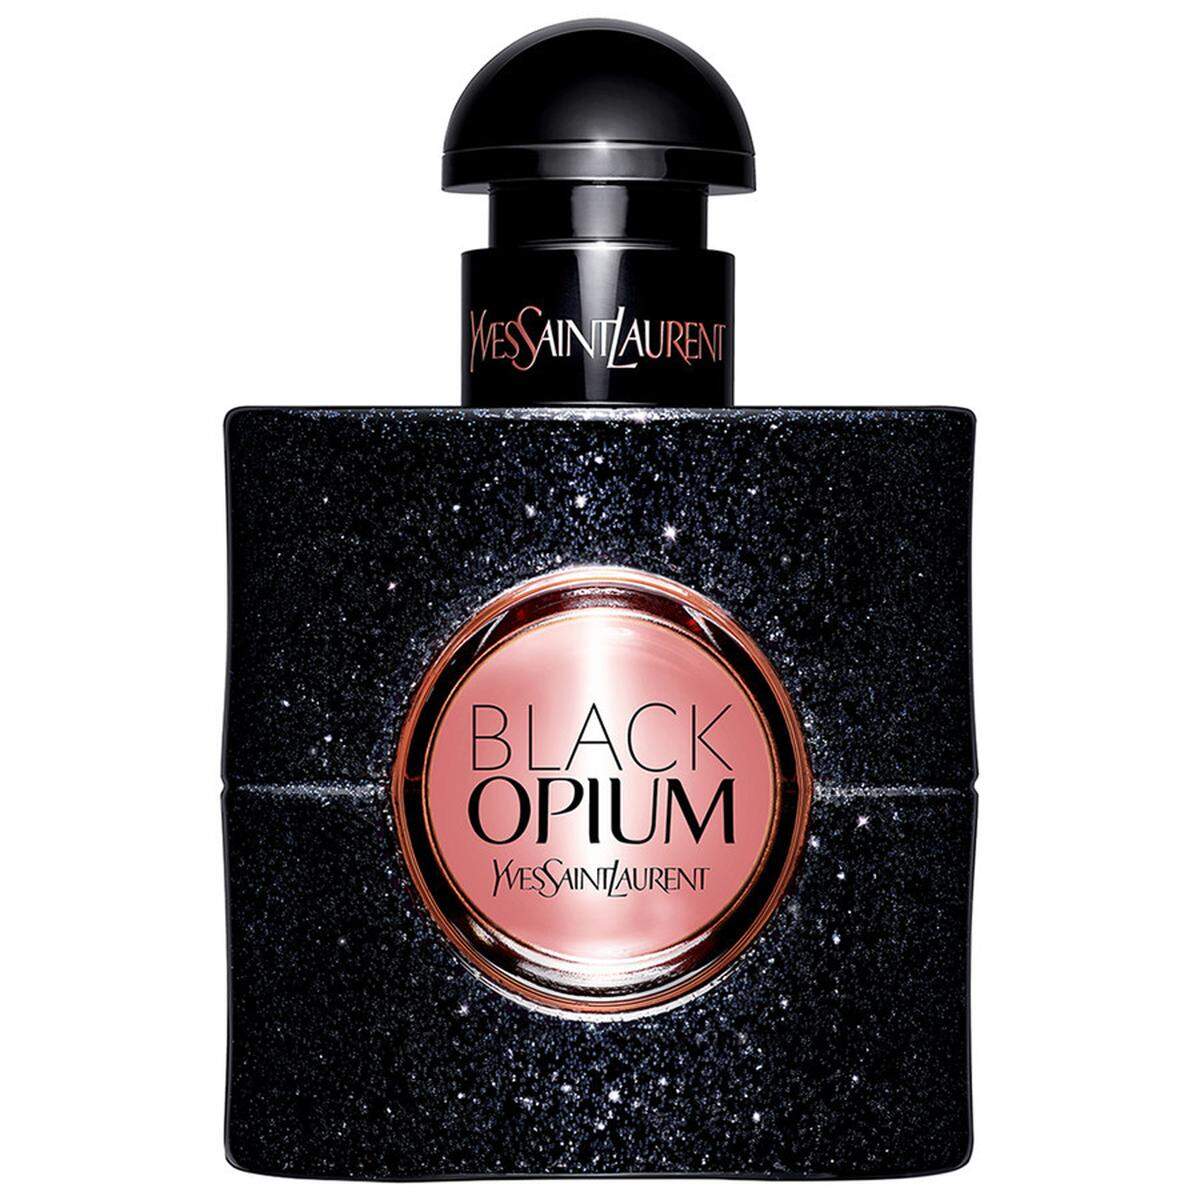 Der Klassiker unter den (Last Minute-)Weihnachtsgeschenken: Parfums. Wer um den Duftgeschmack des Beschenkten Bescheid weiß, der liegt damit sicher richtig. Zu Weihnachten gibt es auch besondere Editionen, etwa Black Opium von YSL Beauty ab 60 Euro.